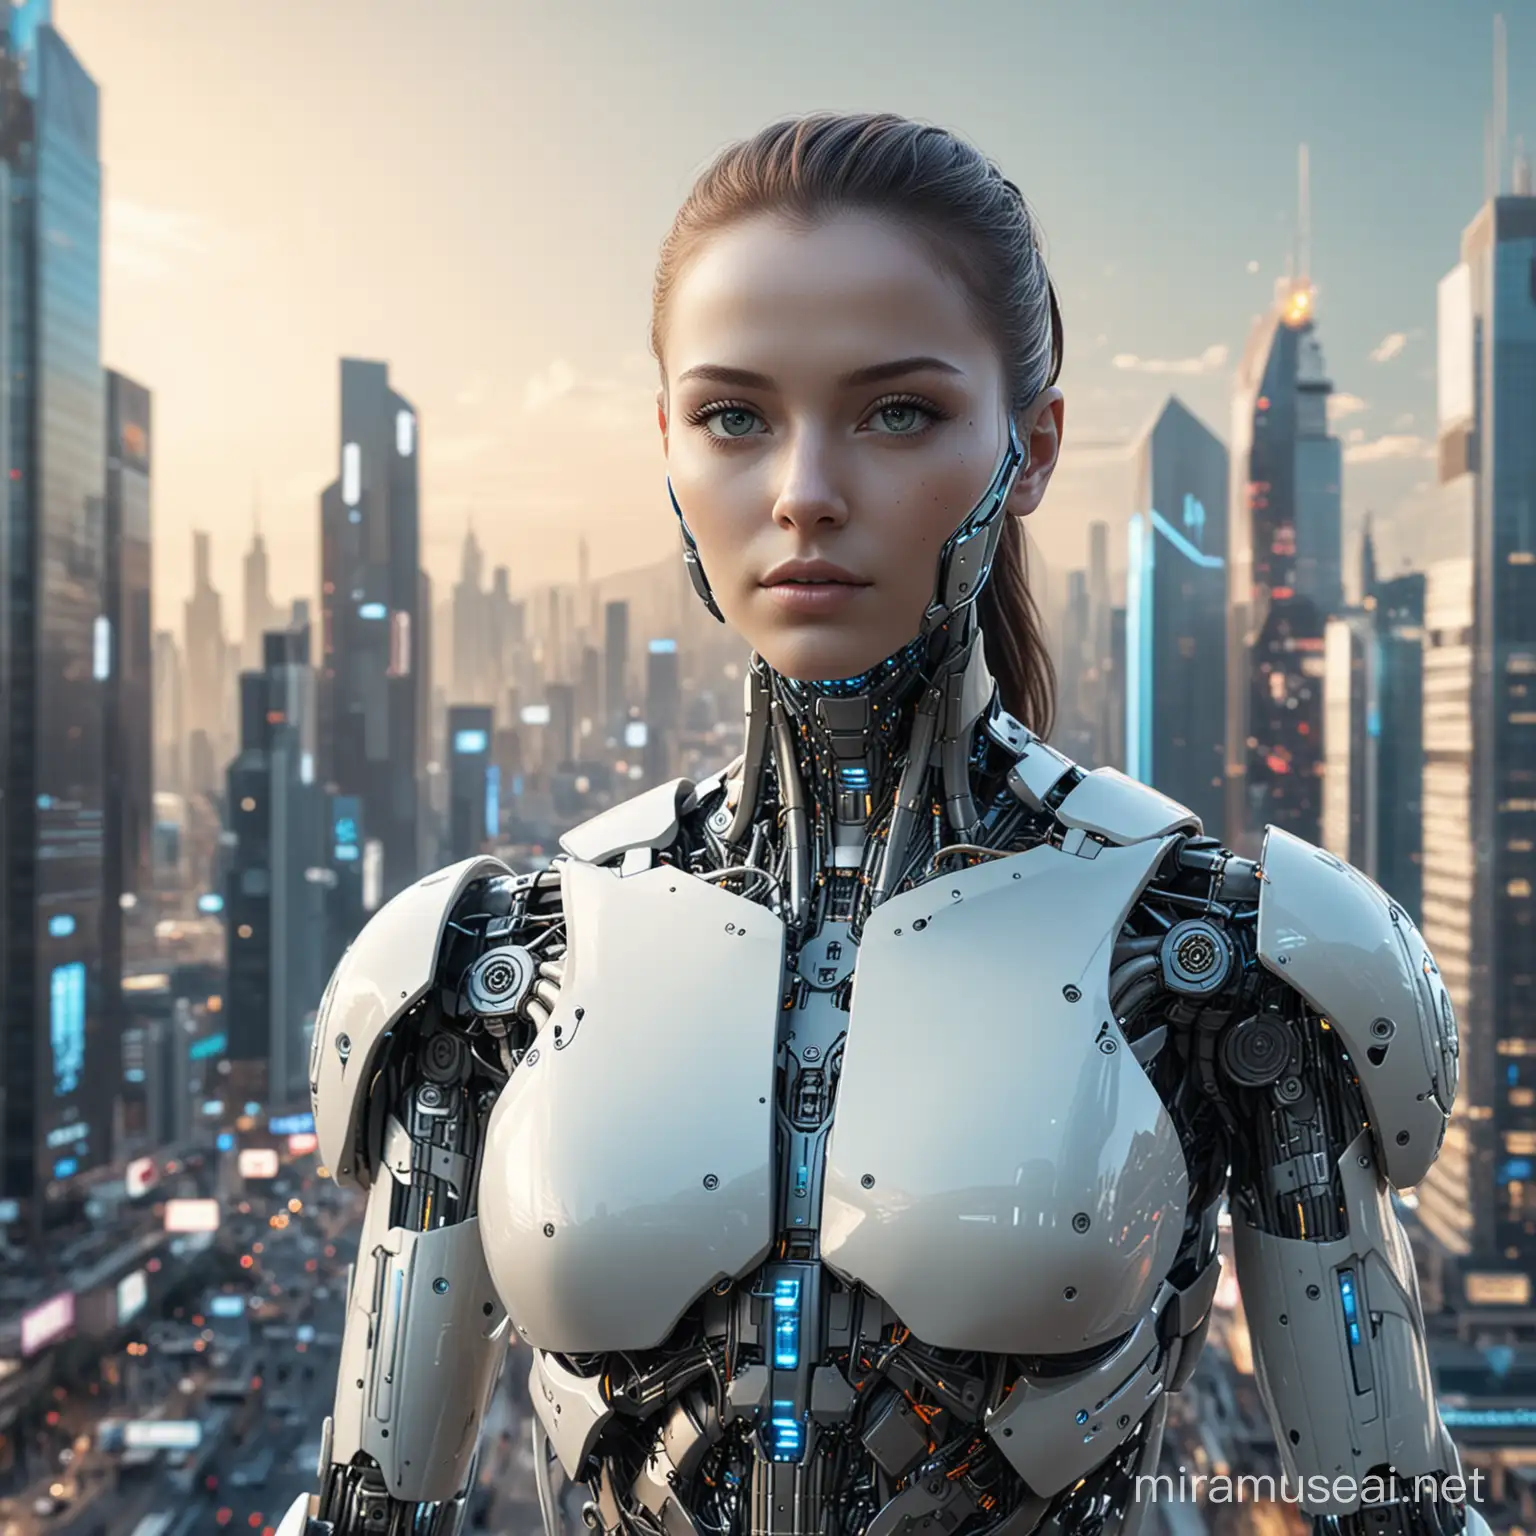 Futuristic AI Humanoid in a Metropolis